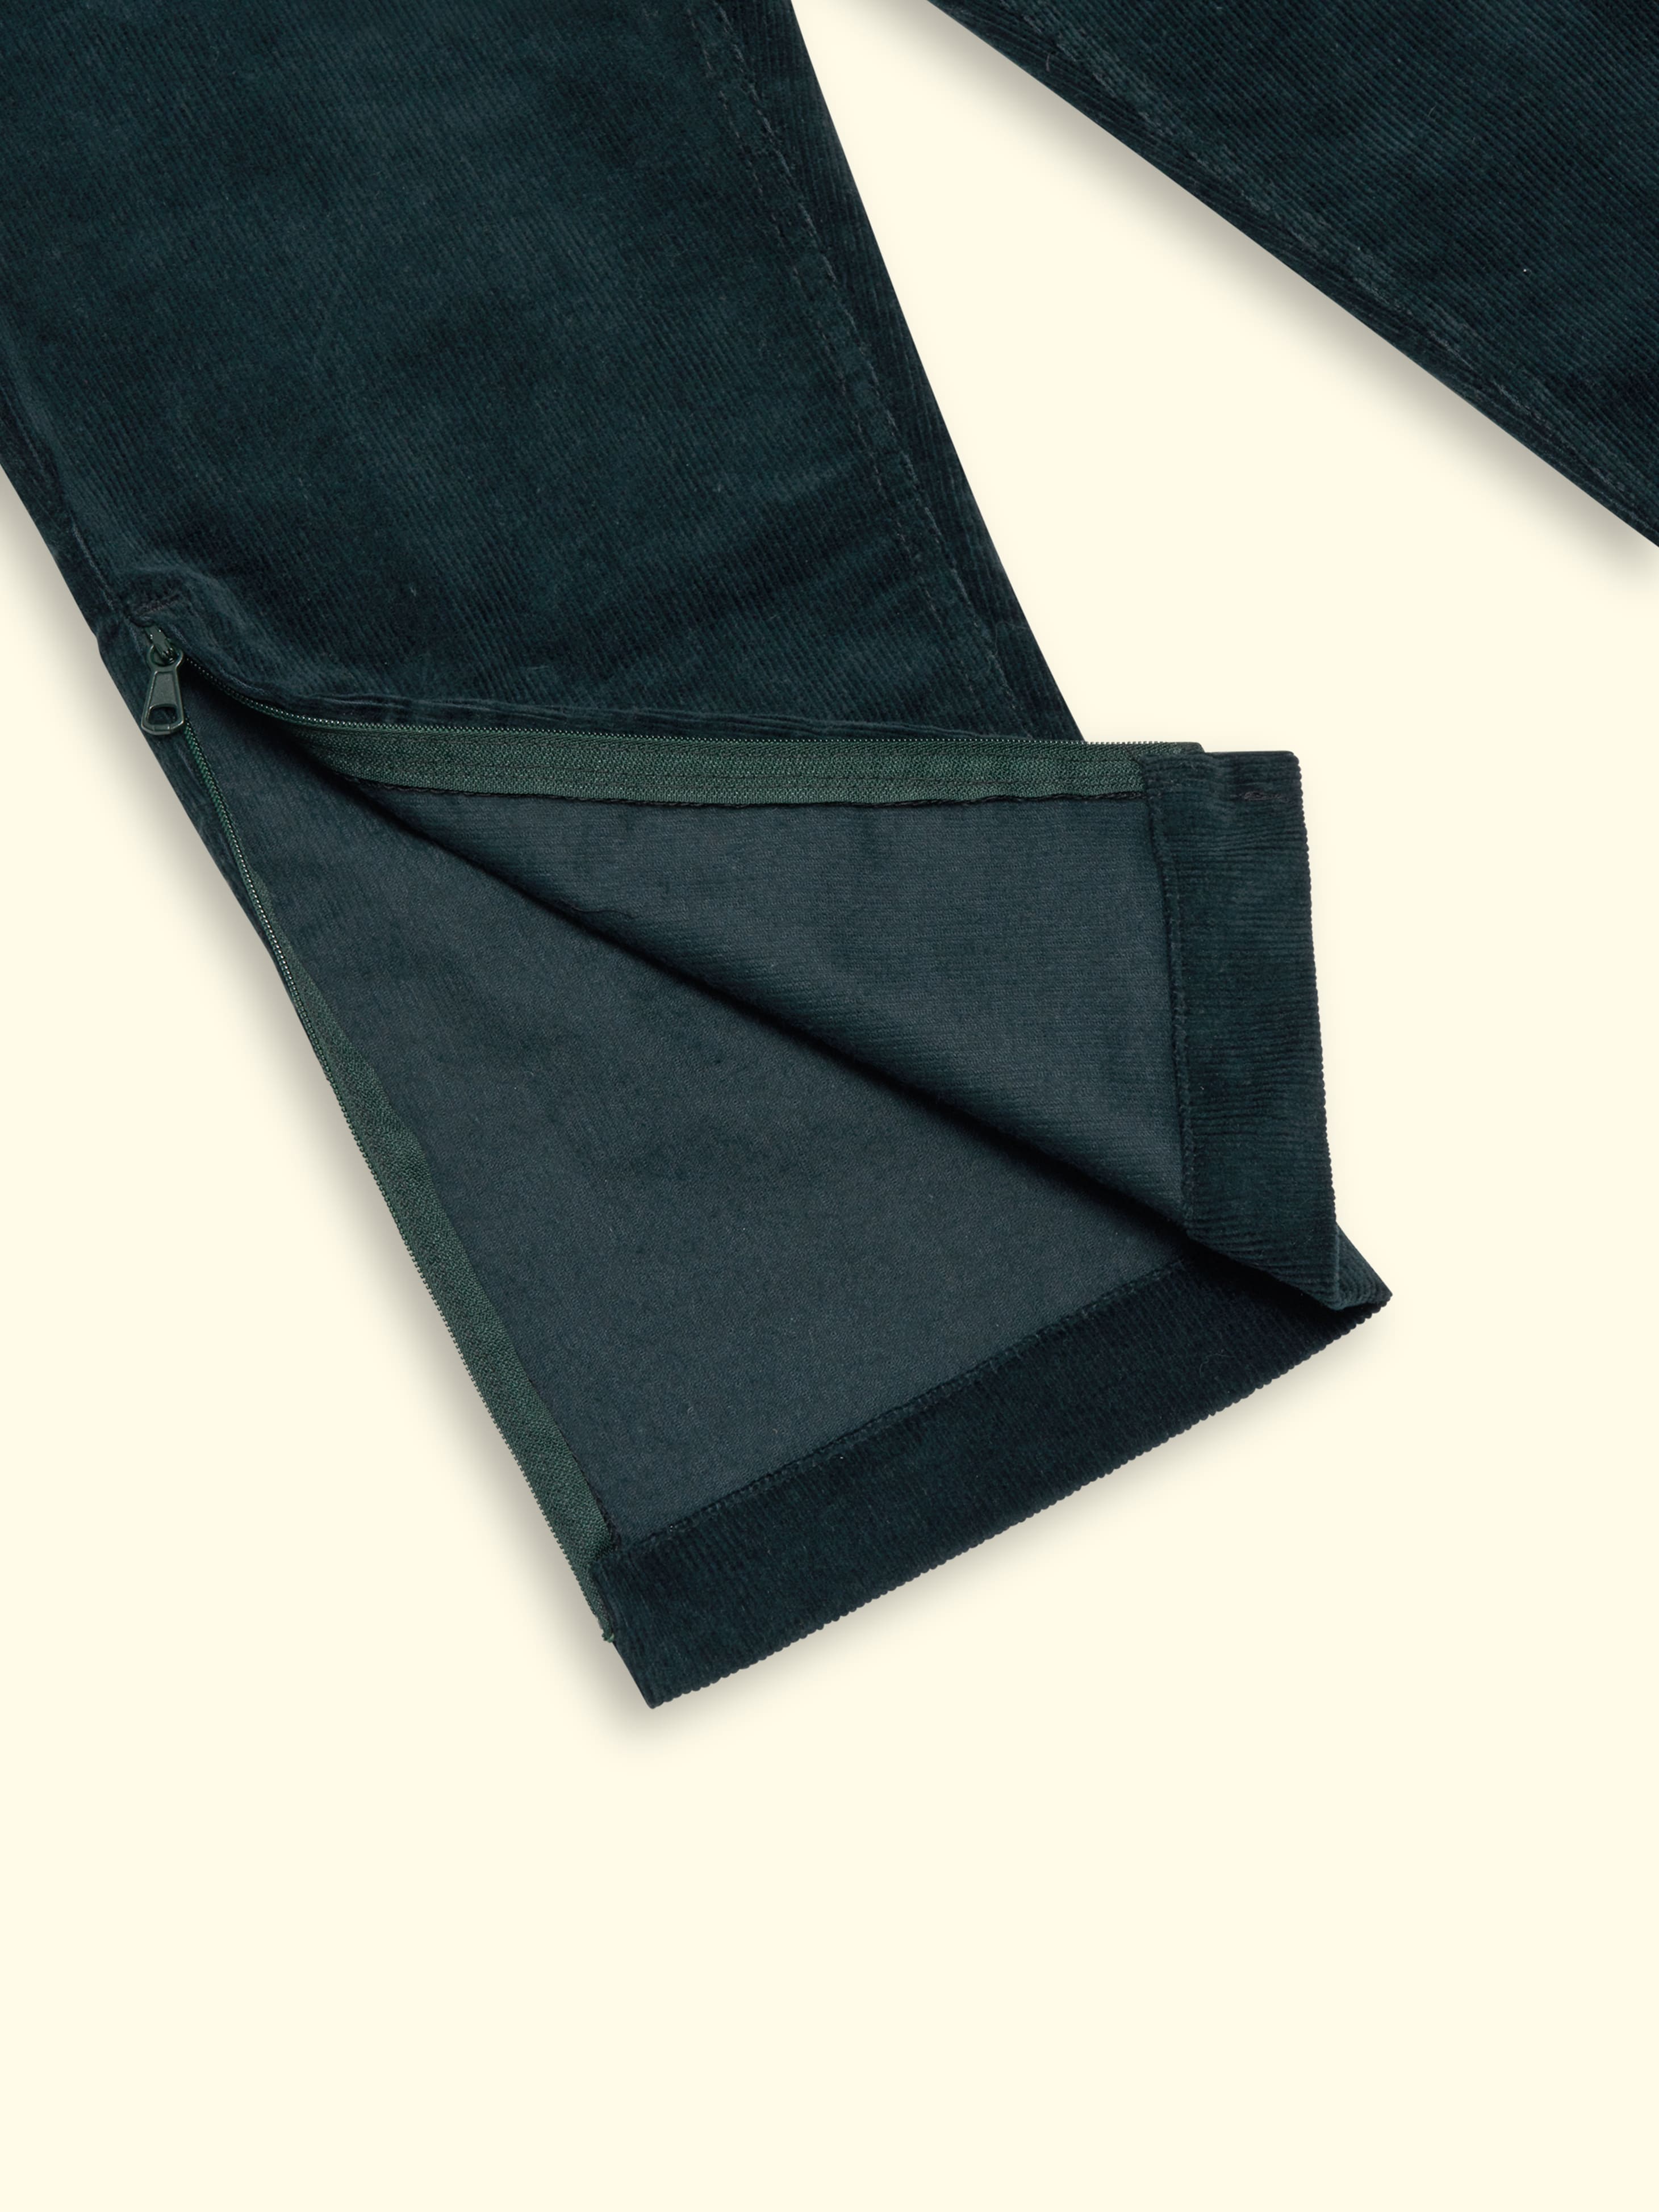 NOUVEAU - Pantalon en velours côtelé Pippo - avec fermeture aimantée et ouverture latérale jusqu'au genou, selon la taille. 140